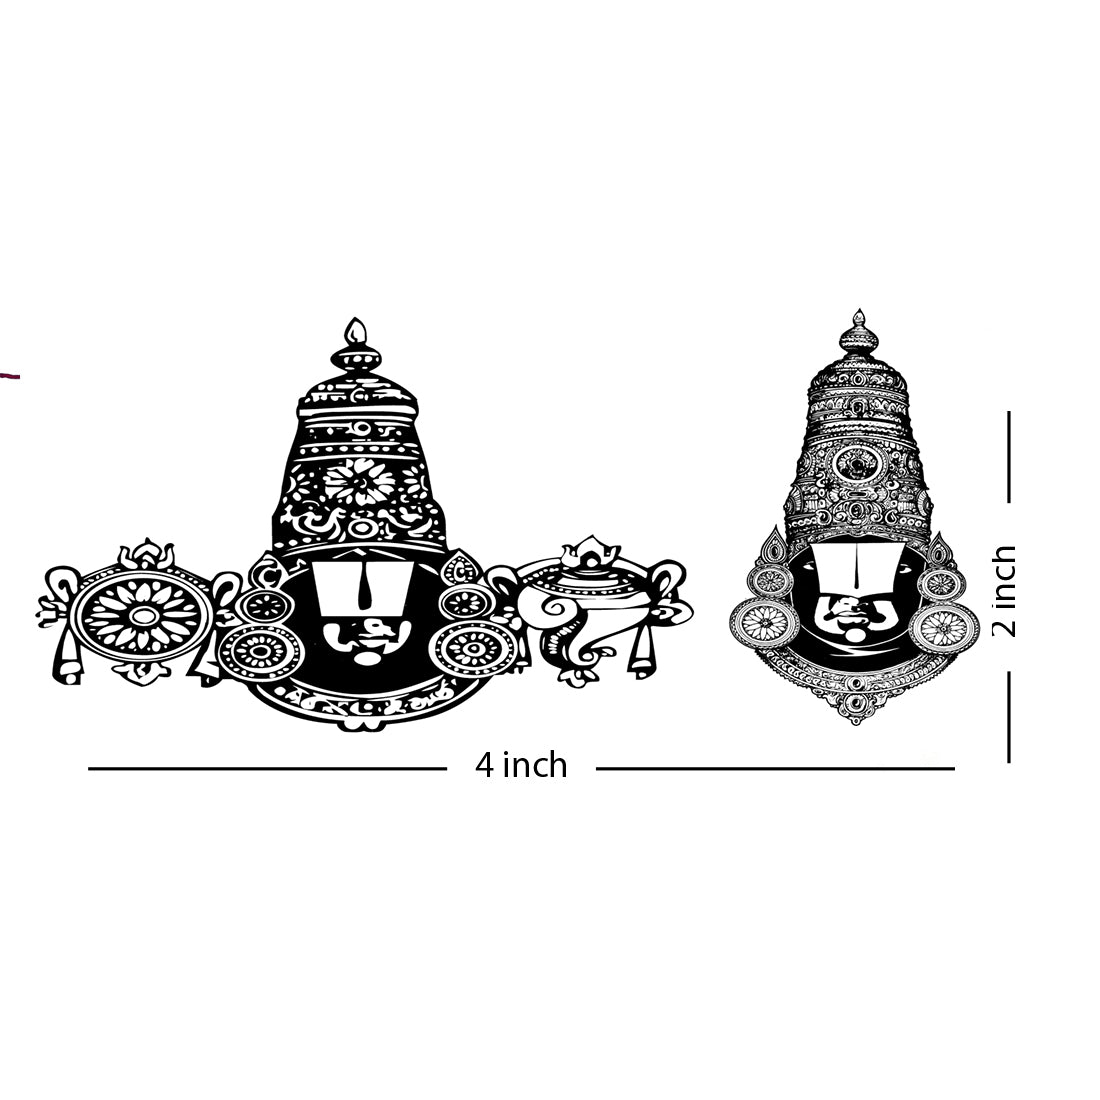 Panchmukhi Hanuman Ji  Amazing benefits of worshiping Panchmukhi Hanuman  ji in Sawan सब ओर स टट रह आस त सवन म पचमख हनमन स मग  आशरवद